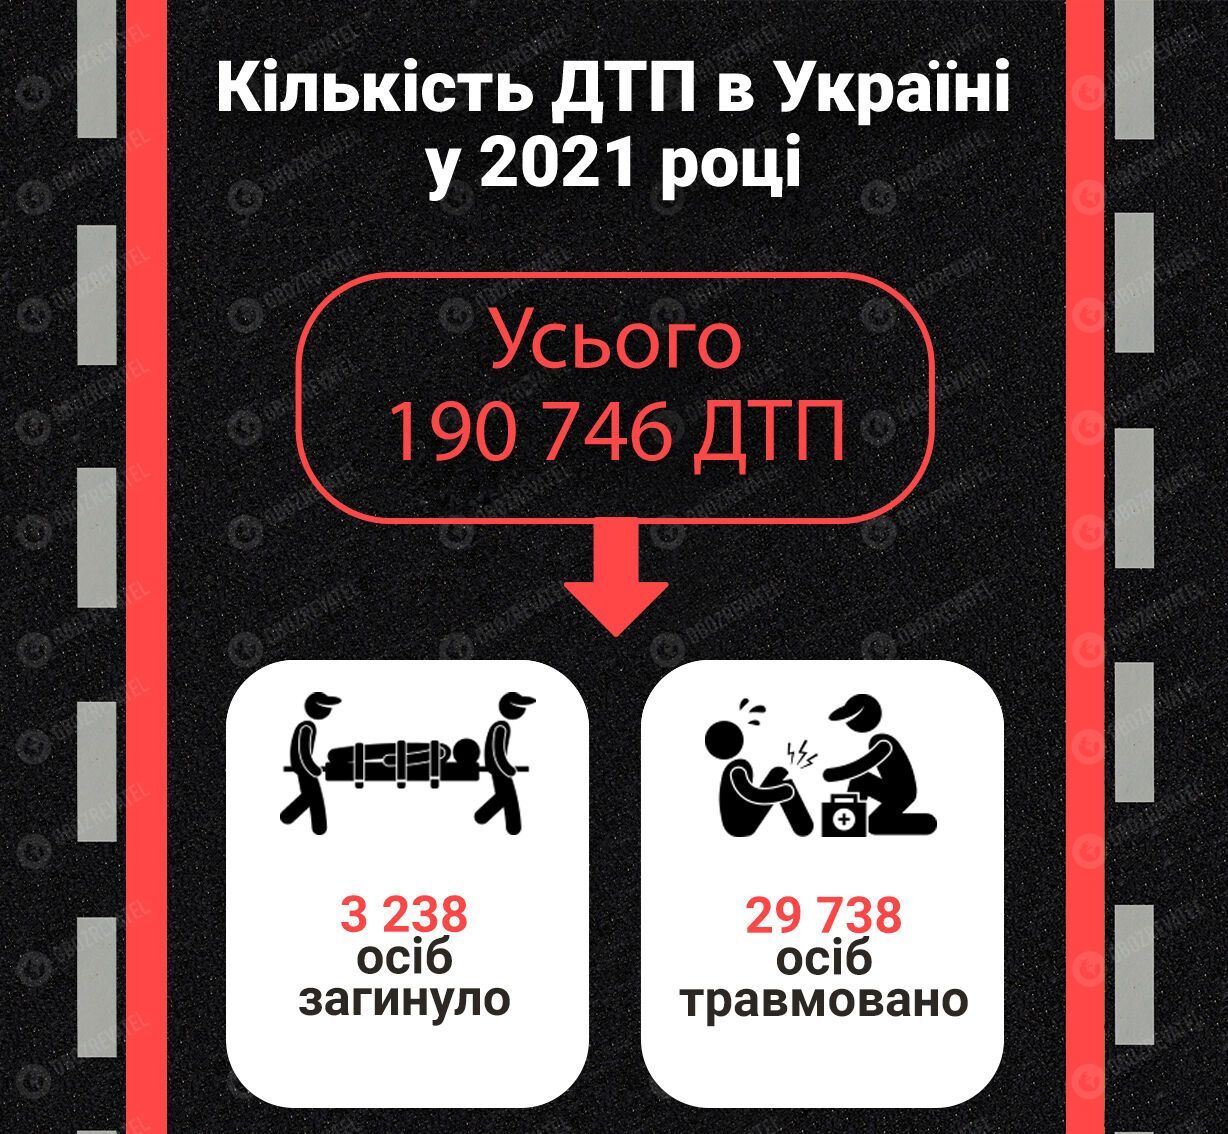 Статистика по ДТП в Украине за 2021 год